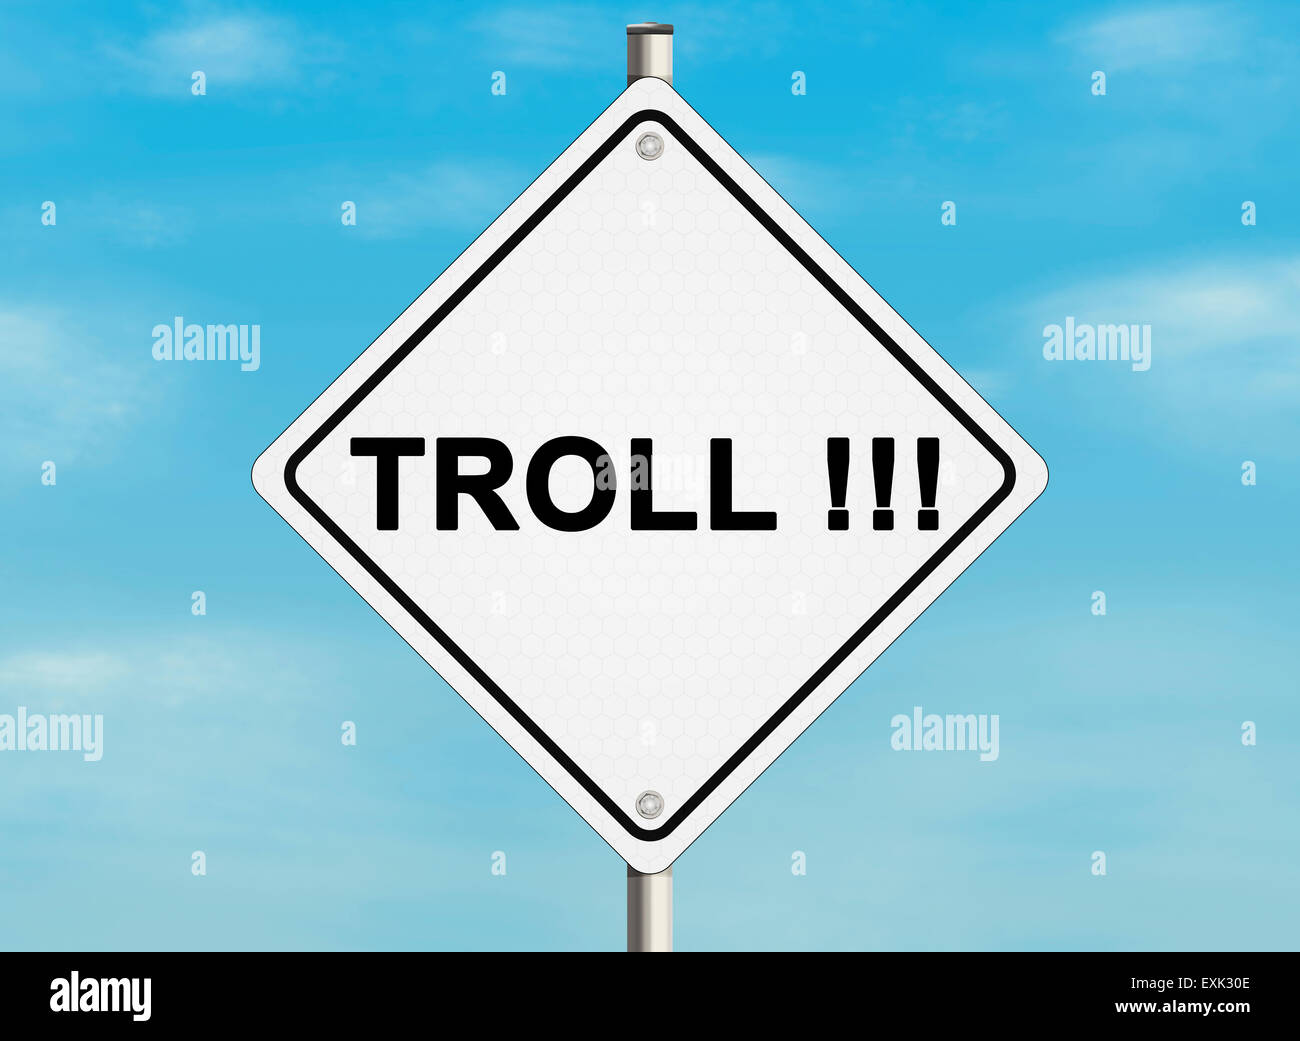 Internet troll problema. Cartello stradale sullo sfondo del cielo. Immagine raster Foto Stock